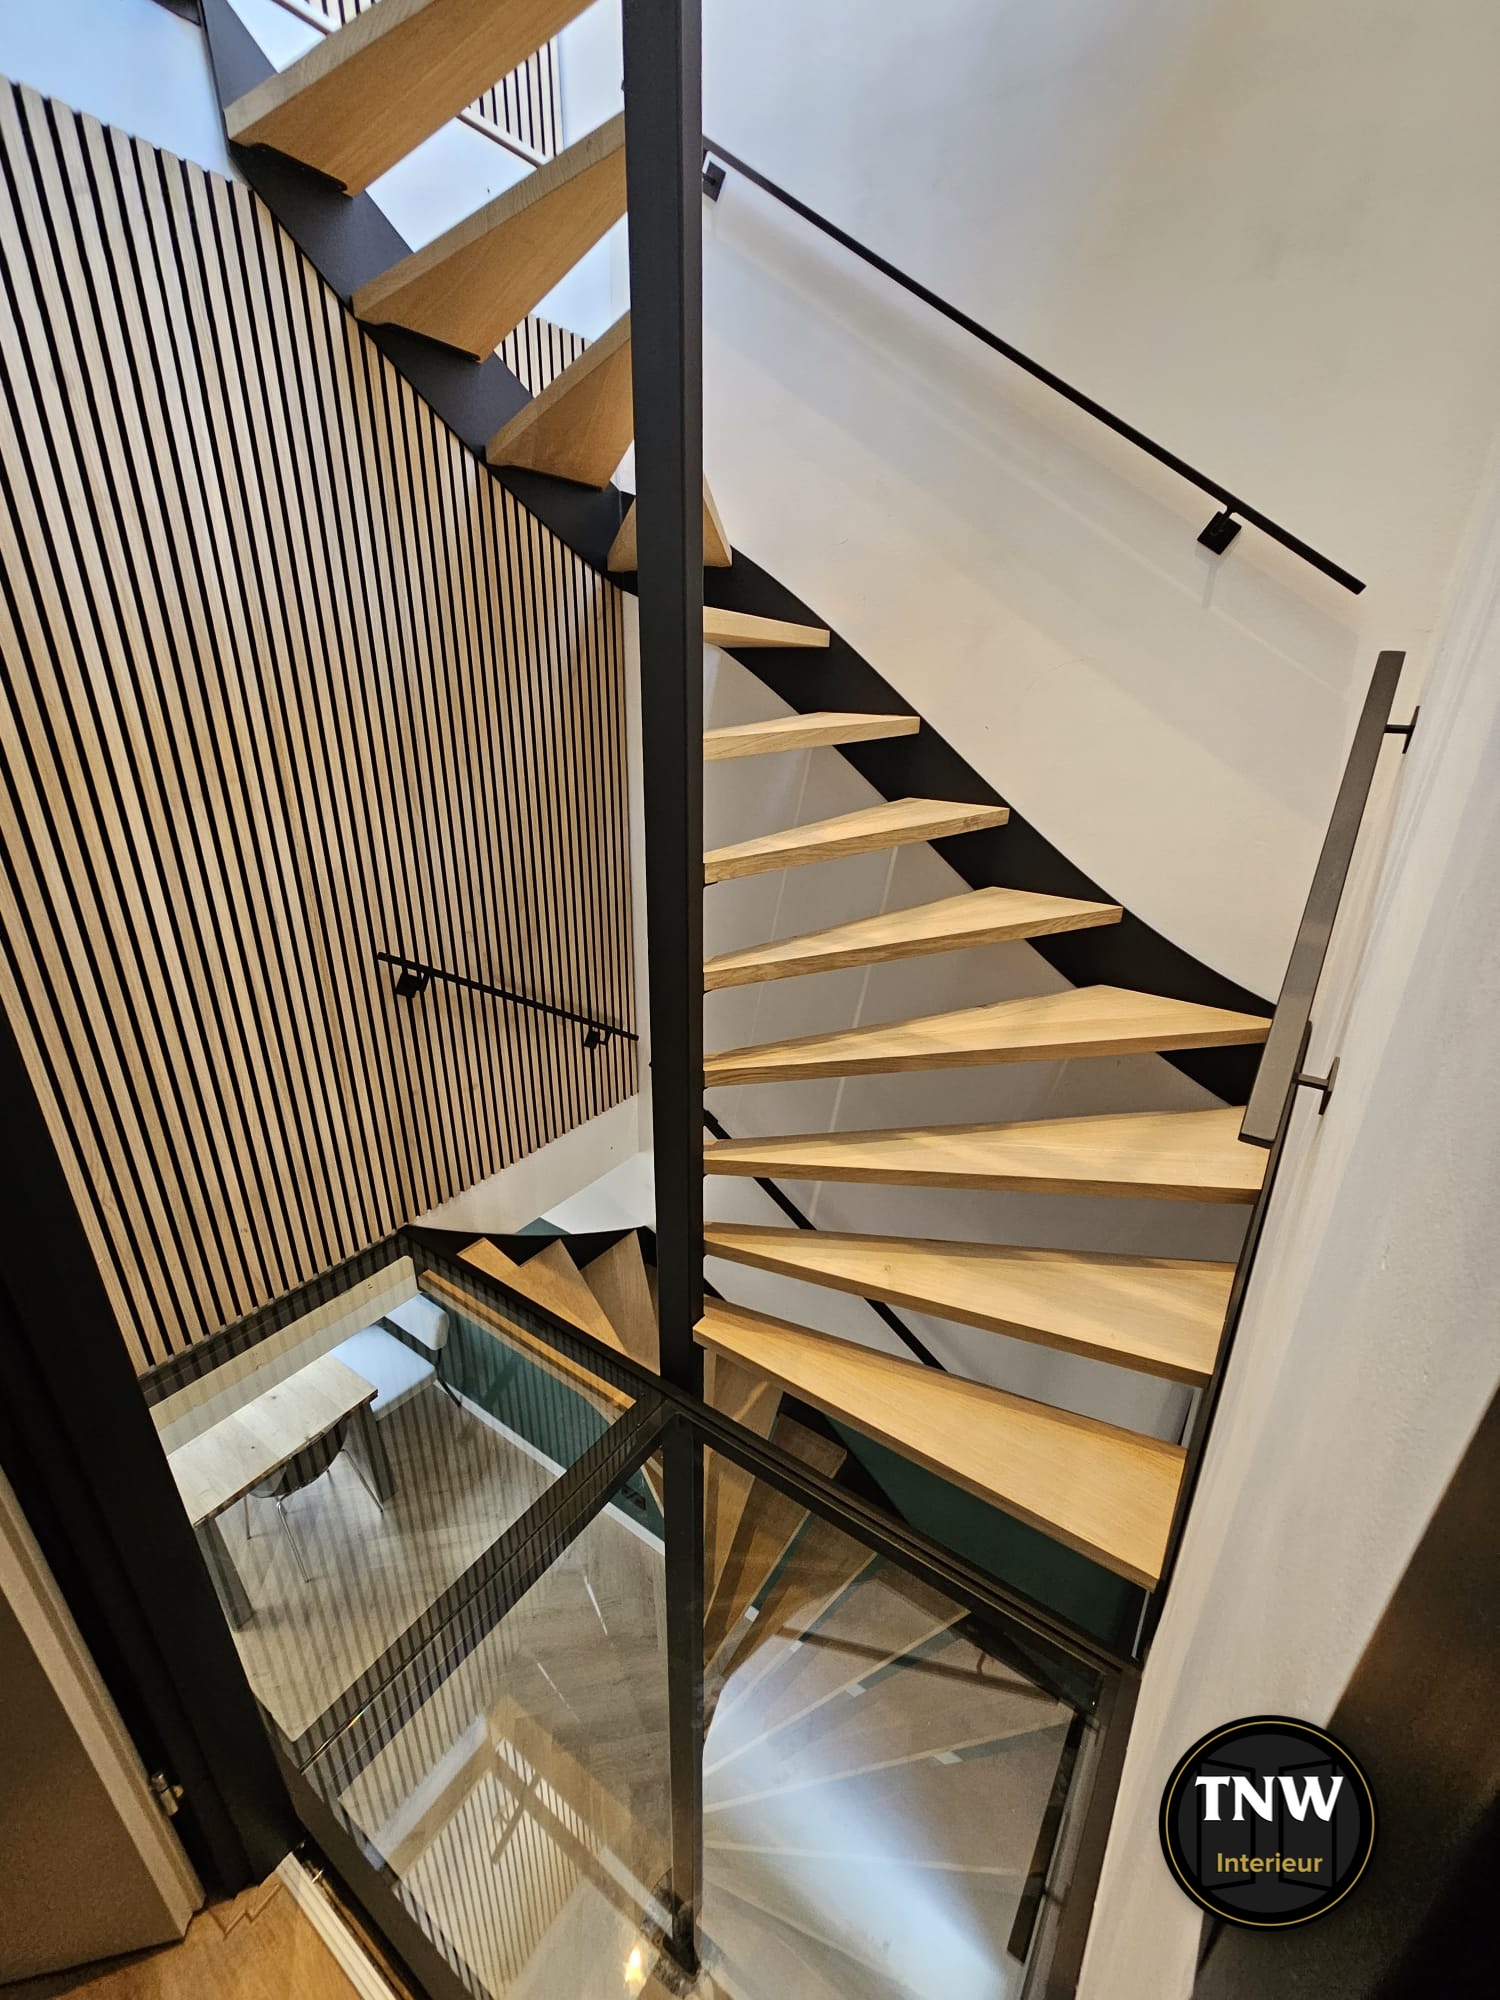 Je bekijkt nu Dubbele trap met unieke glazen overloop | TNW Interieur